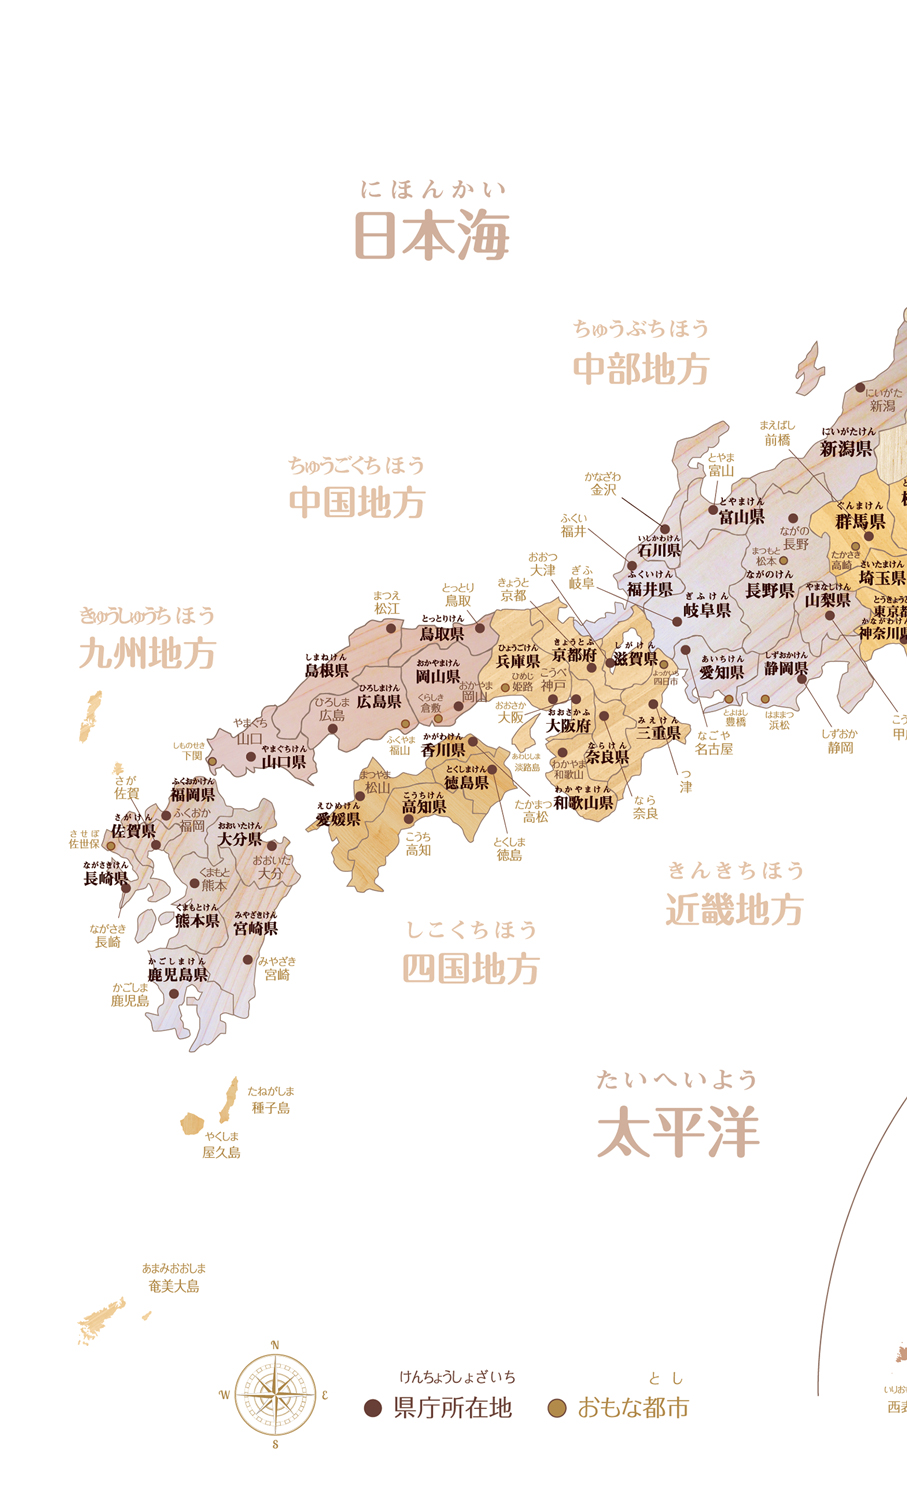 New お風呂対応 ポスター 日本地図 木目がかっこいい寄木風